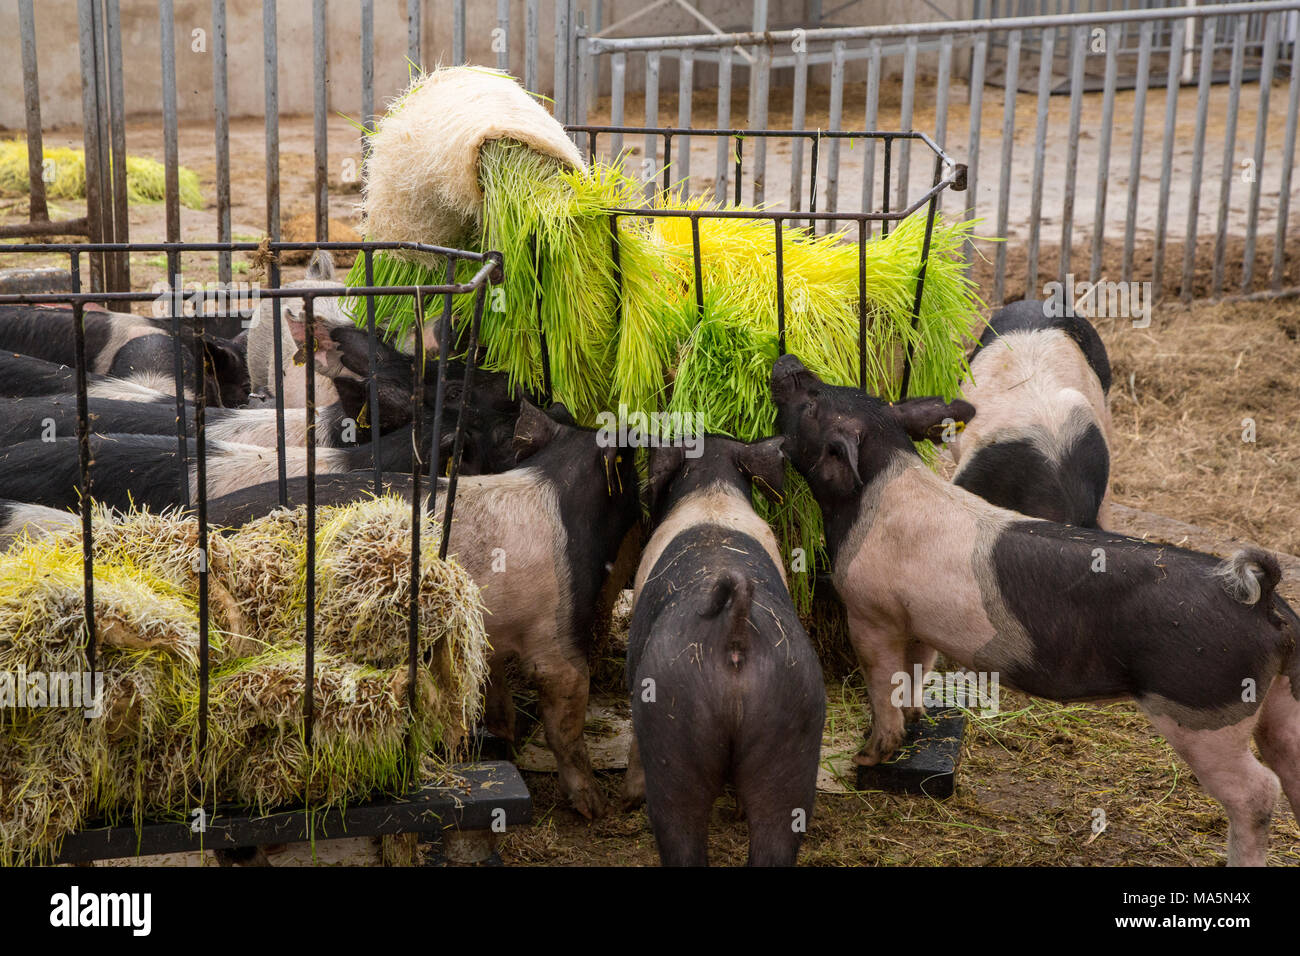 Hydroponic Landwirtschaft. Schweine essen Gerste hydroponisch angebaut. Dyersville, Iowa, USA. Stockfoto